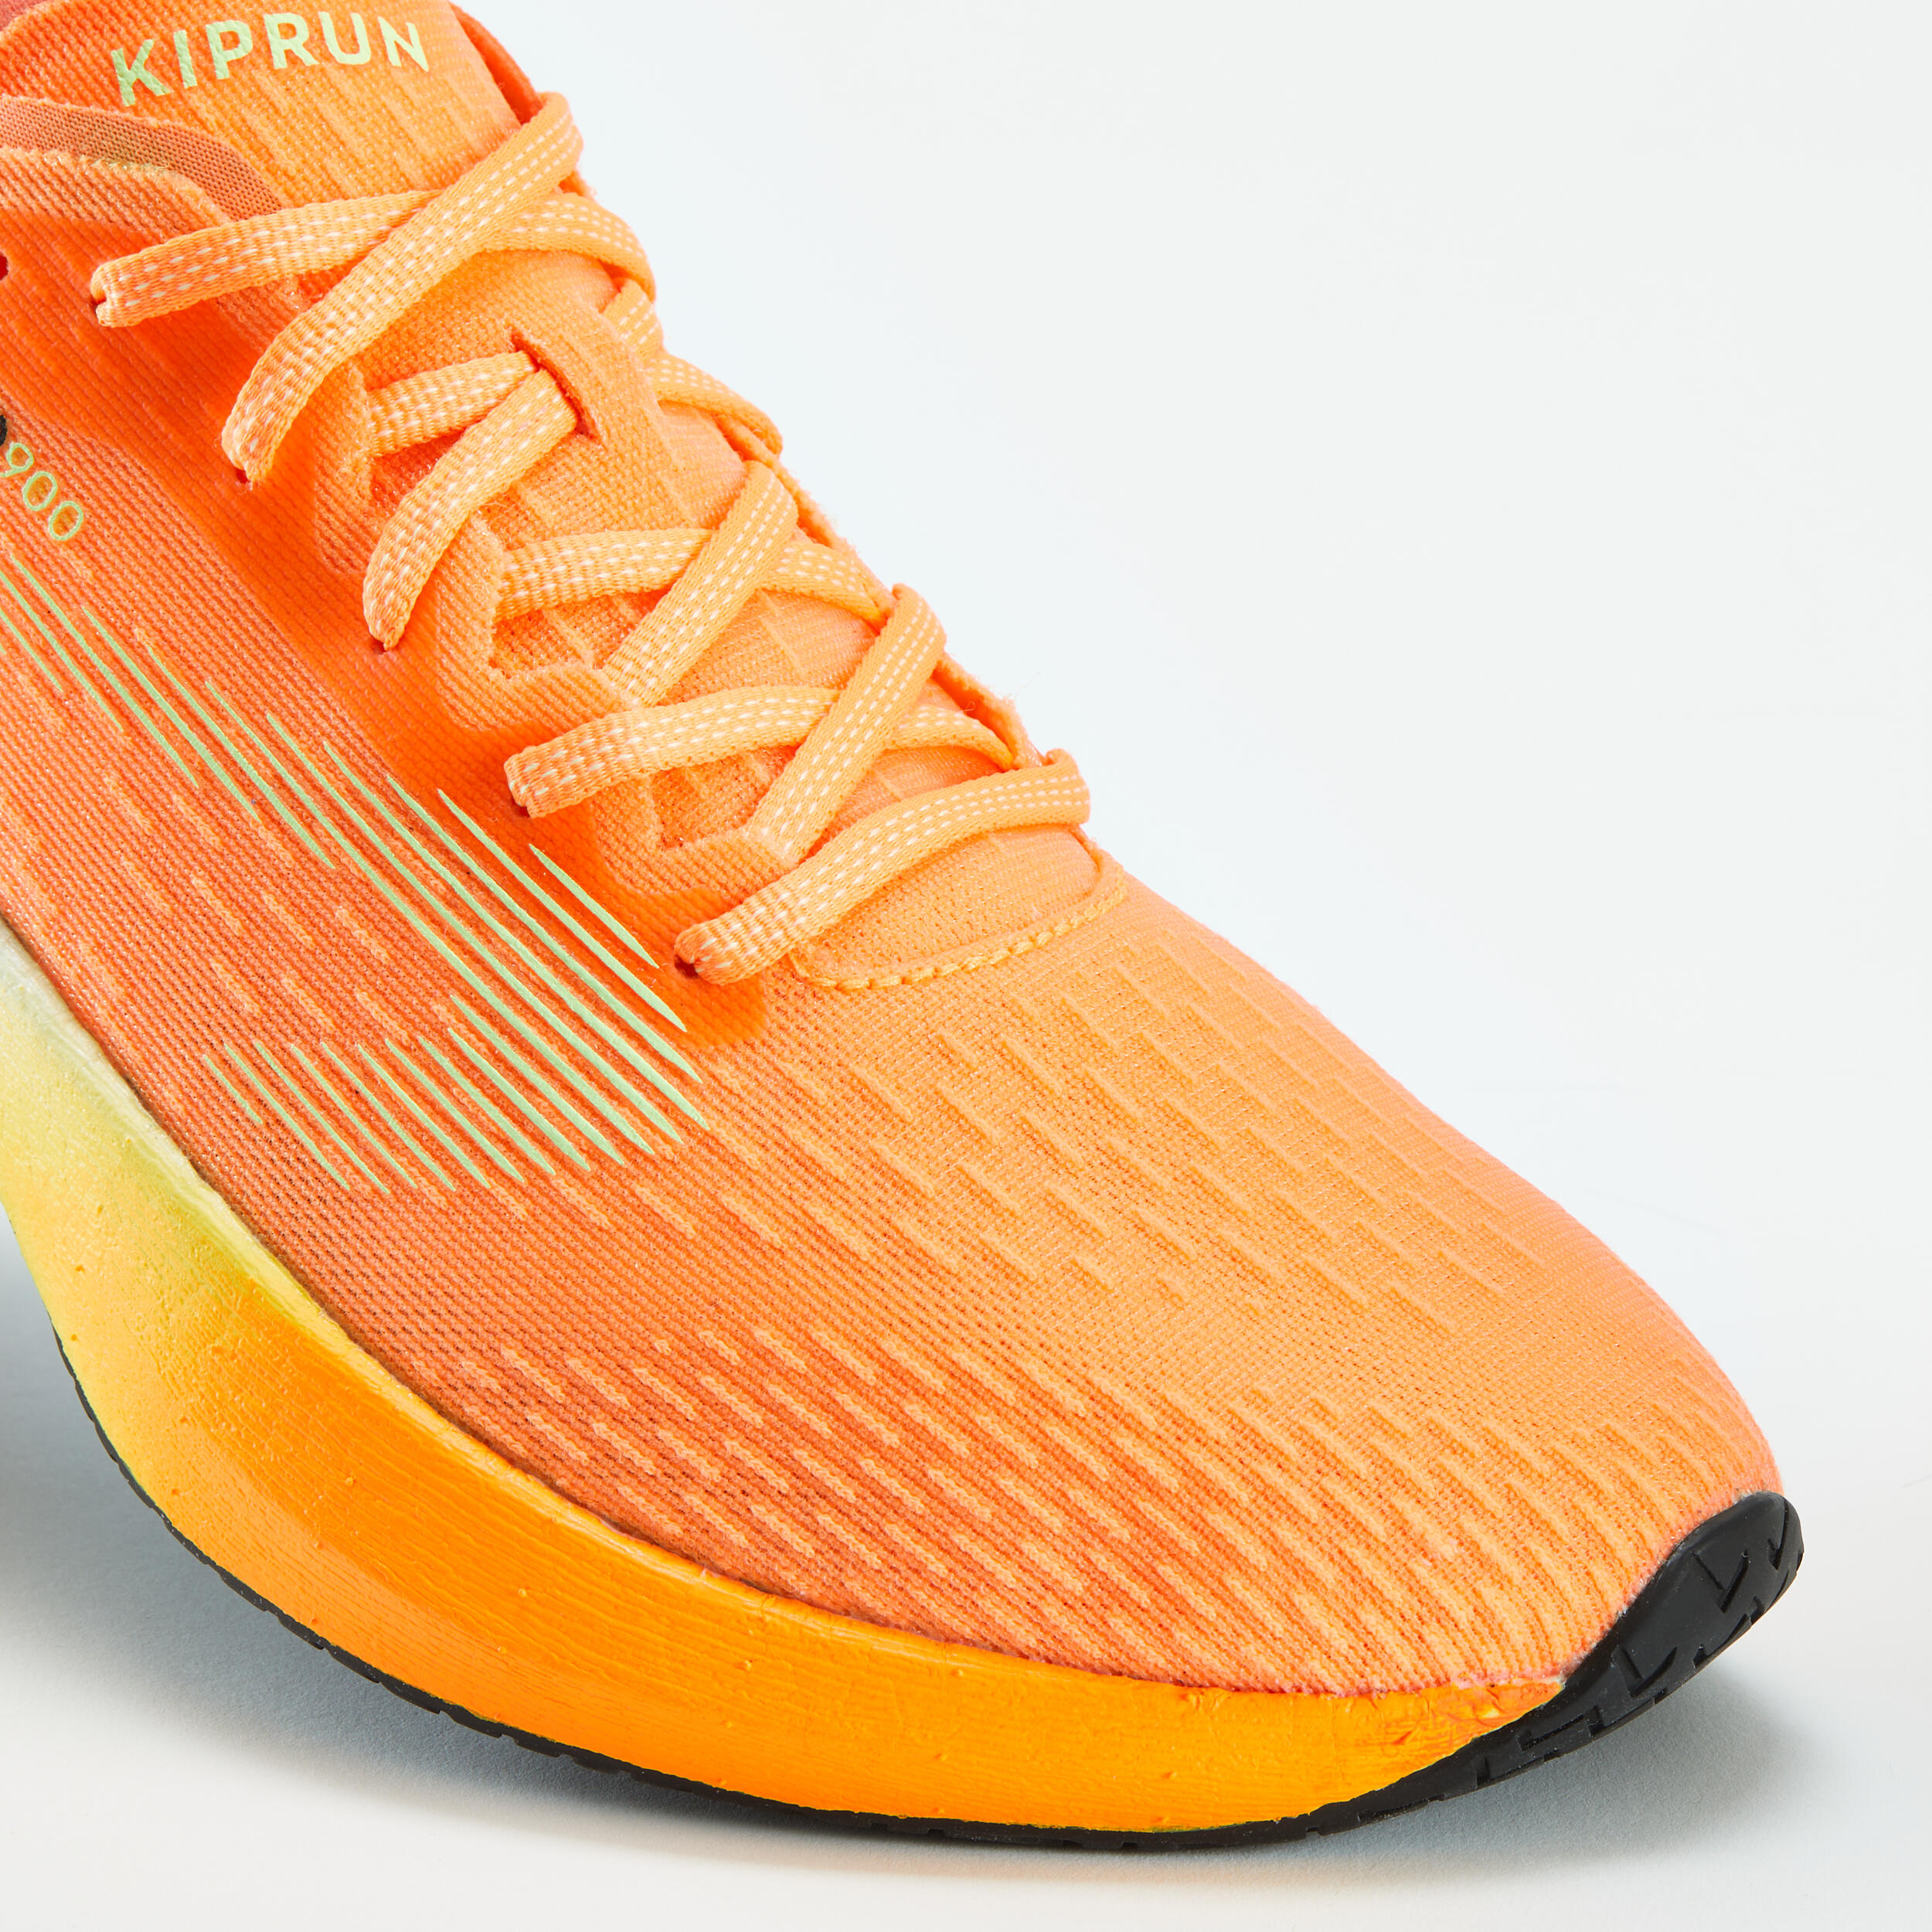 KIPRUN KD900 Men's running shoes - Orange 5/9